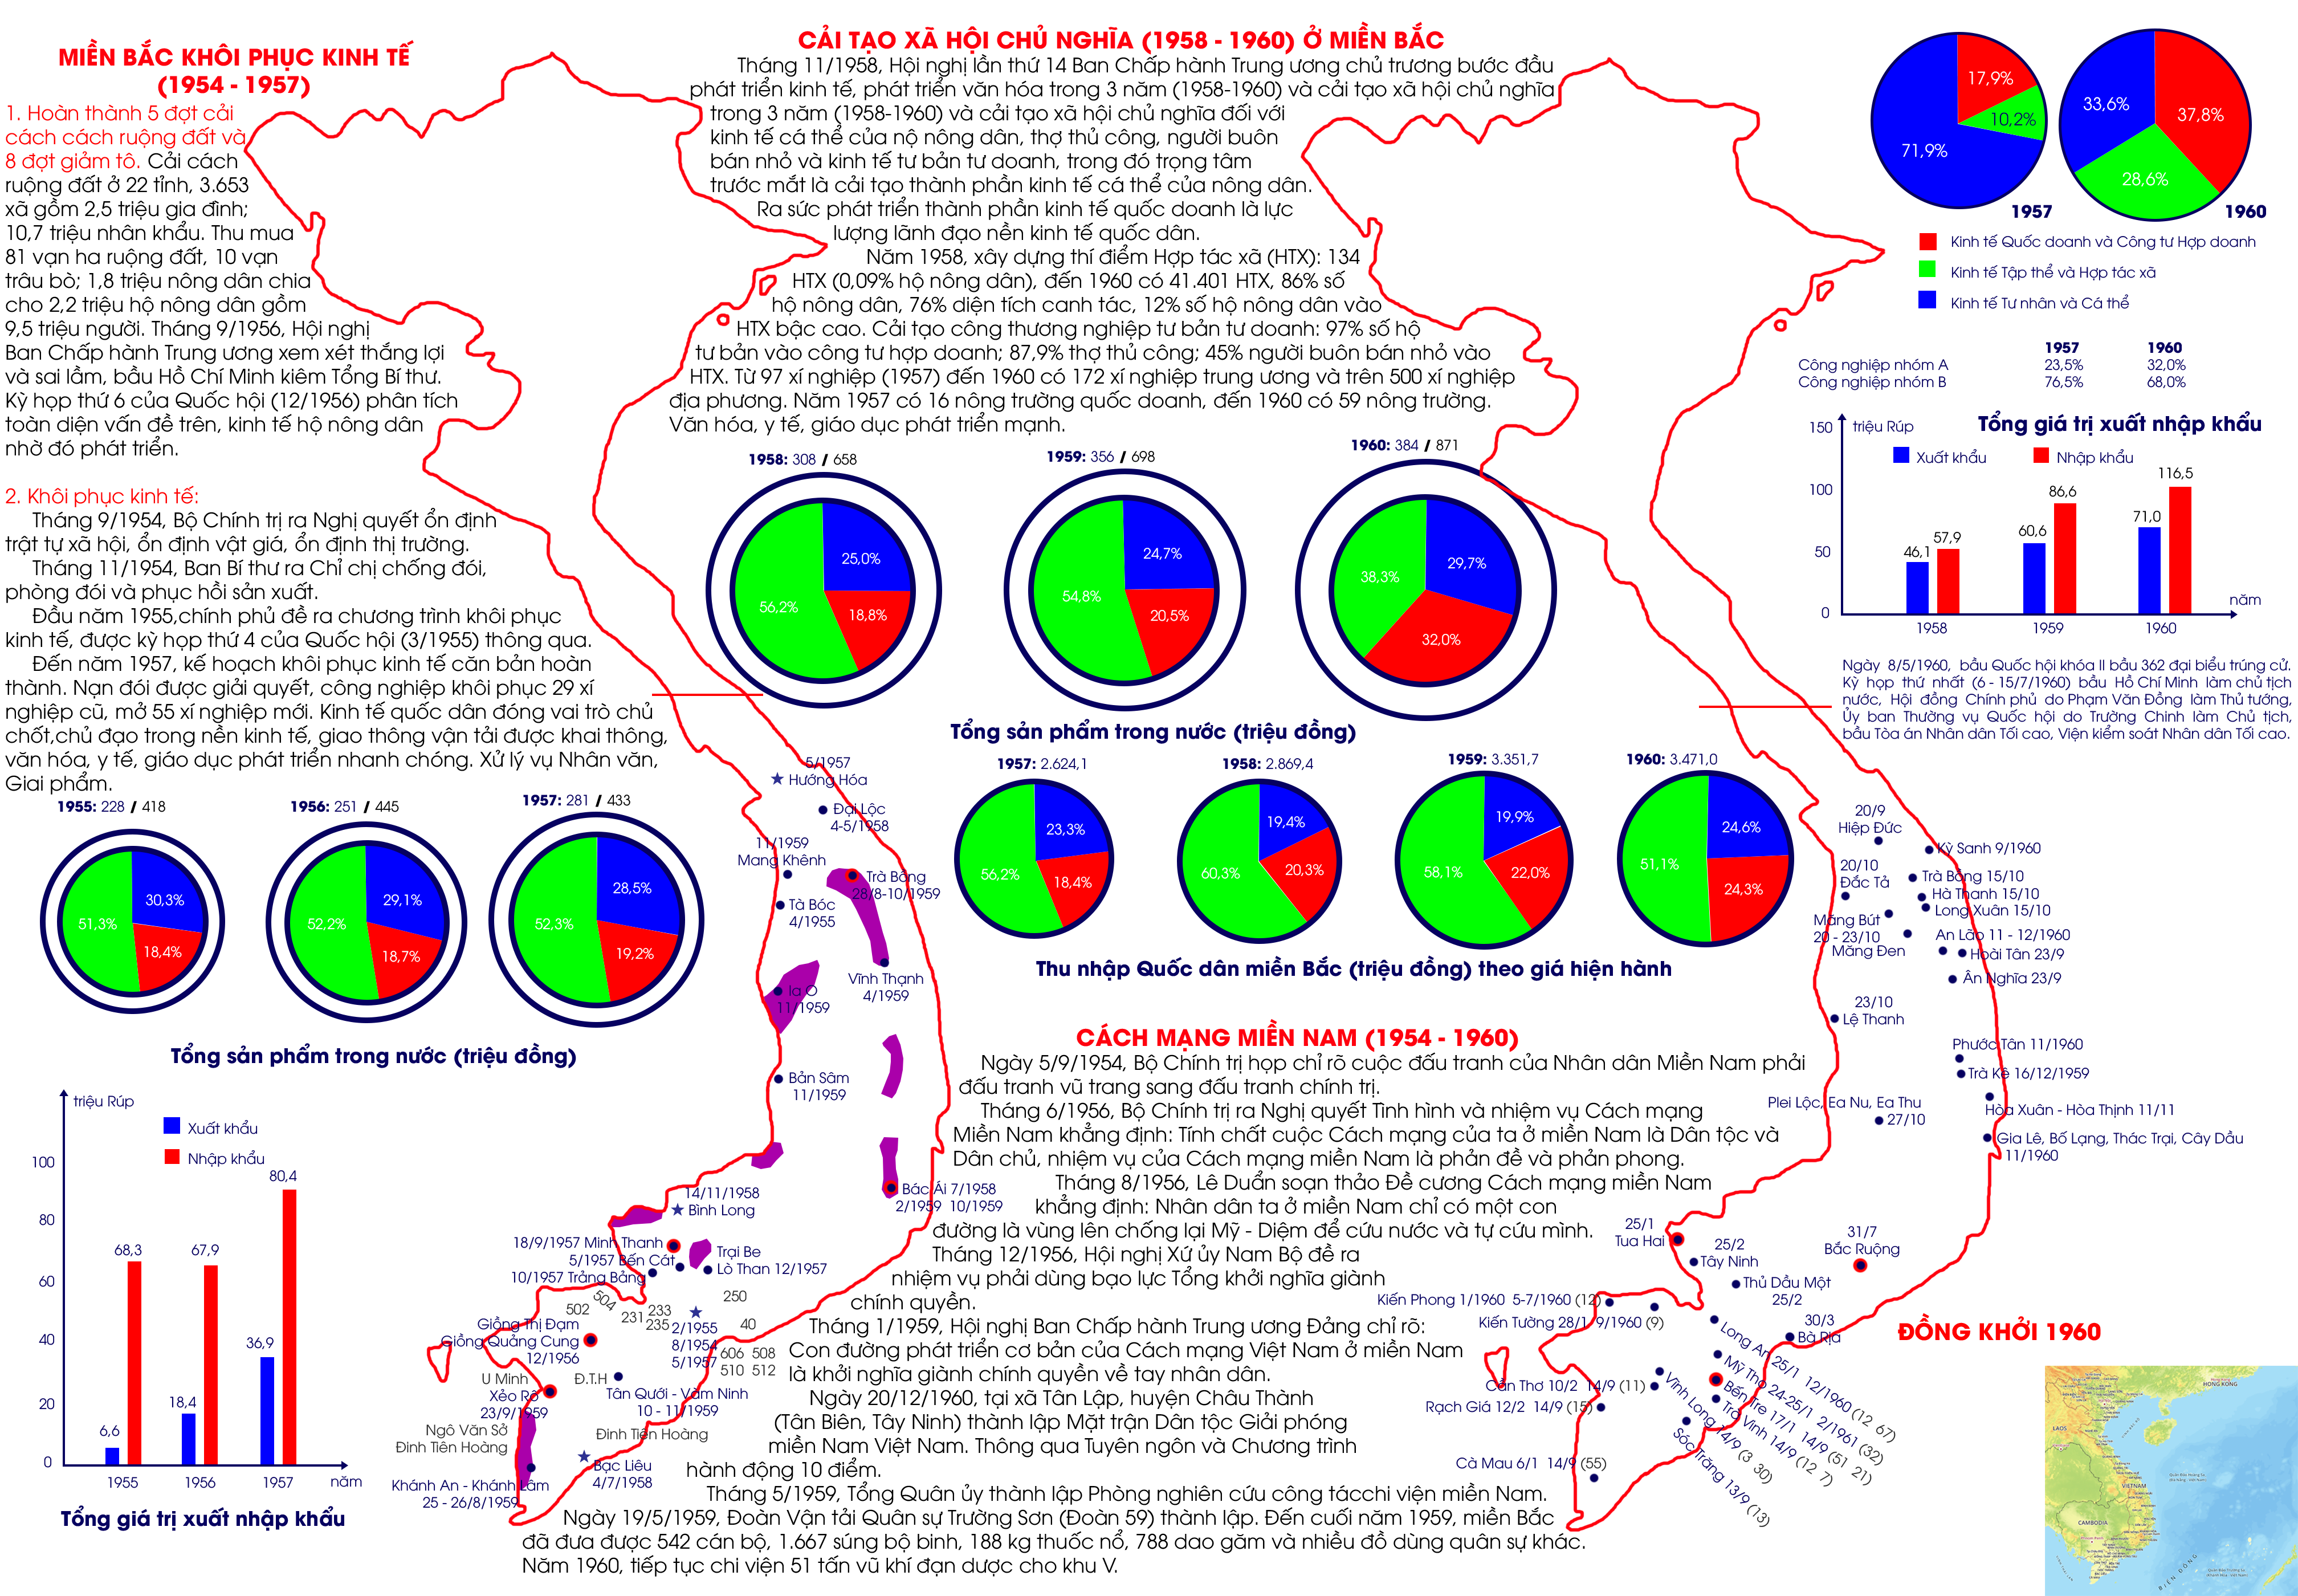 Miền Bắc khôi phục kinh tế 1954-1957 và cải tạo xã hội chủ nghĩa ở Miền Bắc 1958-1960